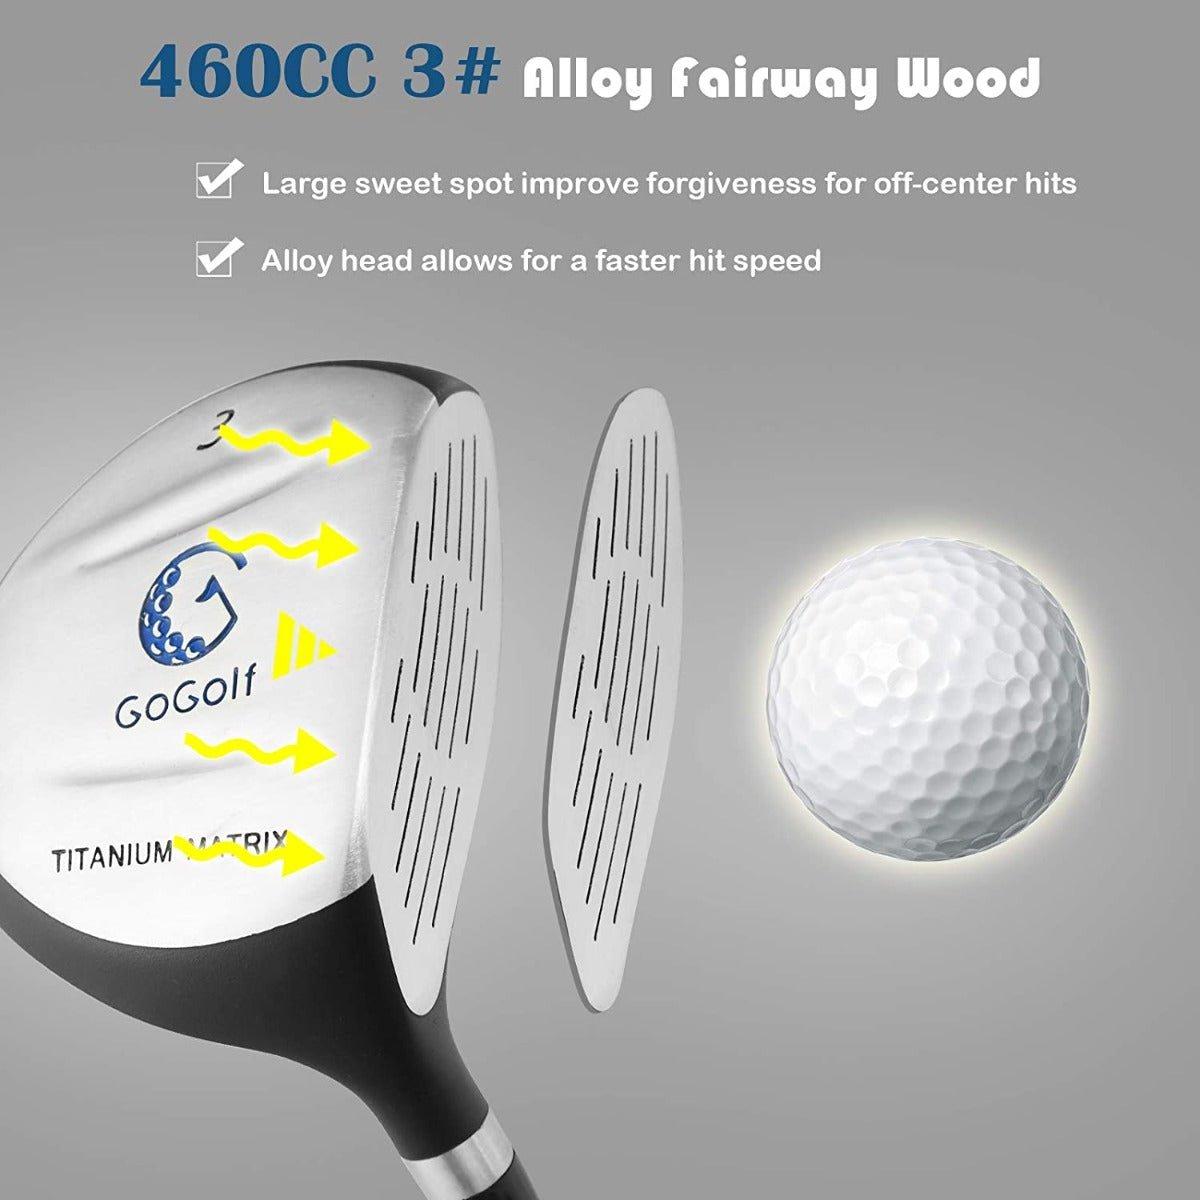 Kids Golf Equipment: Fairway Wood, 7# & 9# Irons, Putter, Stand Bag